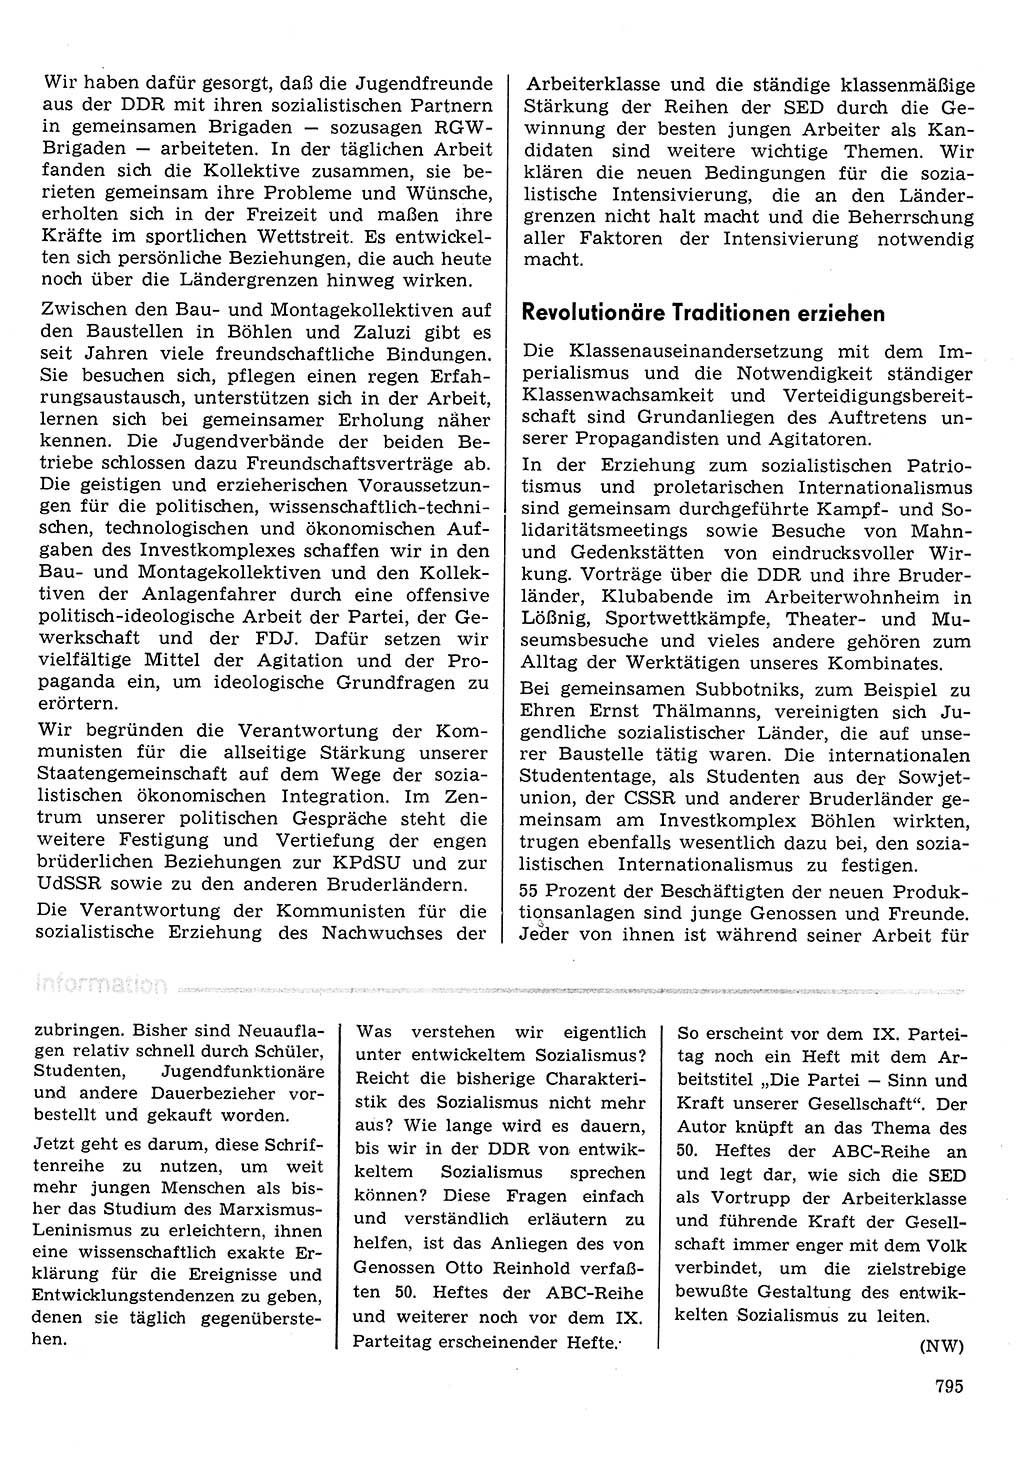 Neuer Weg (NW), Organ des Zentralkomitees (ZK) der SED (Sozialistische Einheitspartei Deutschlands) für Fragen des Parteilebens, 30. Jahrgang [Deutsche Demokratische Republik (DDR)] 1975, Seite 795 (NW ZK SED DDR 1975, S. 795)